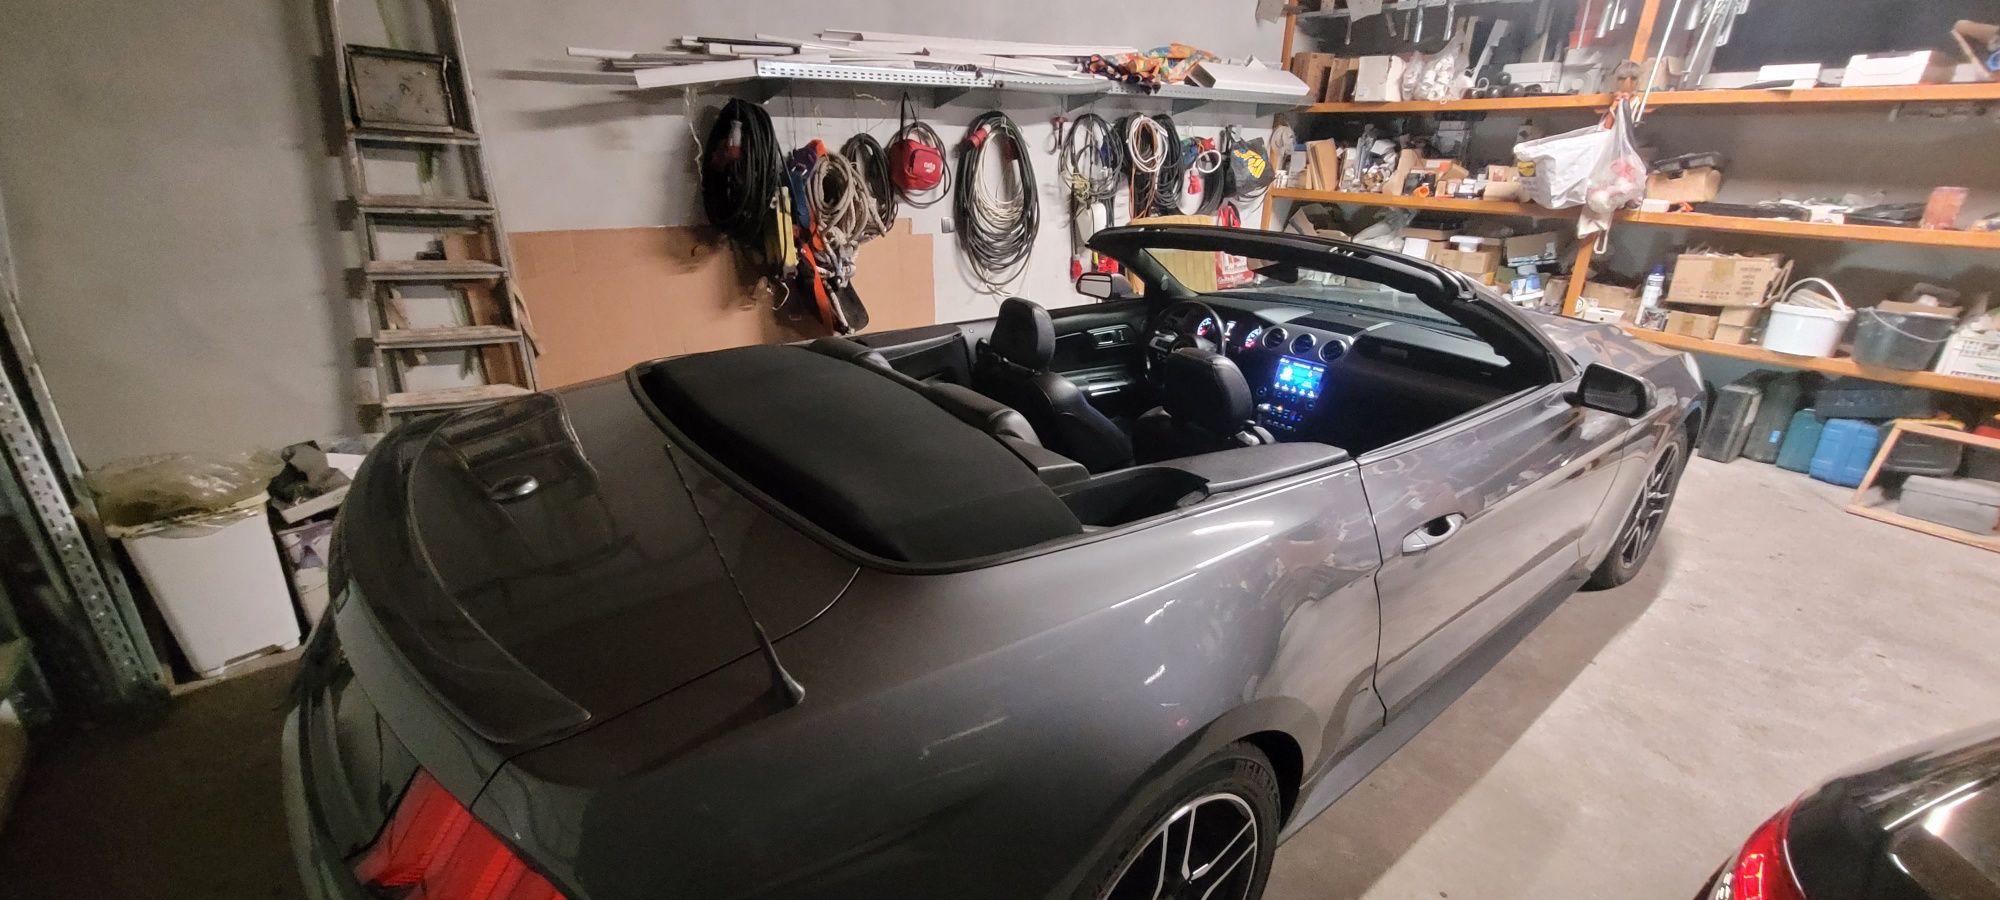 Ford Mustang Cabrio mieszkanie działka nieruchomość garaż wymiana